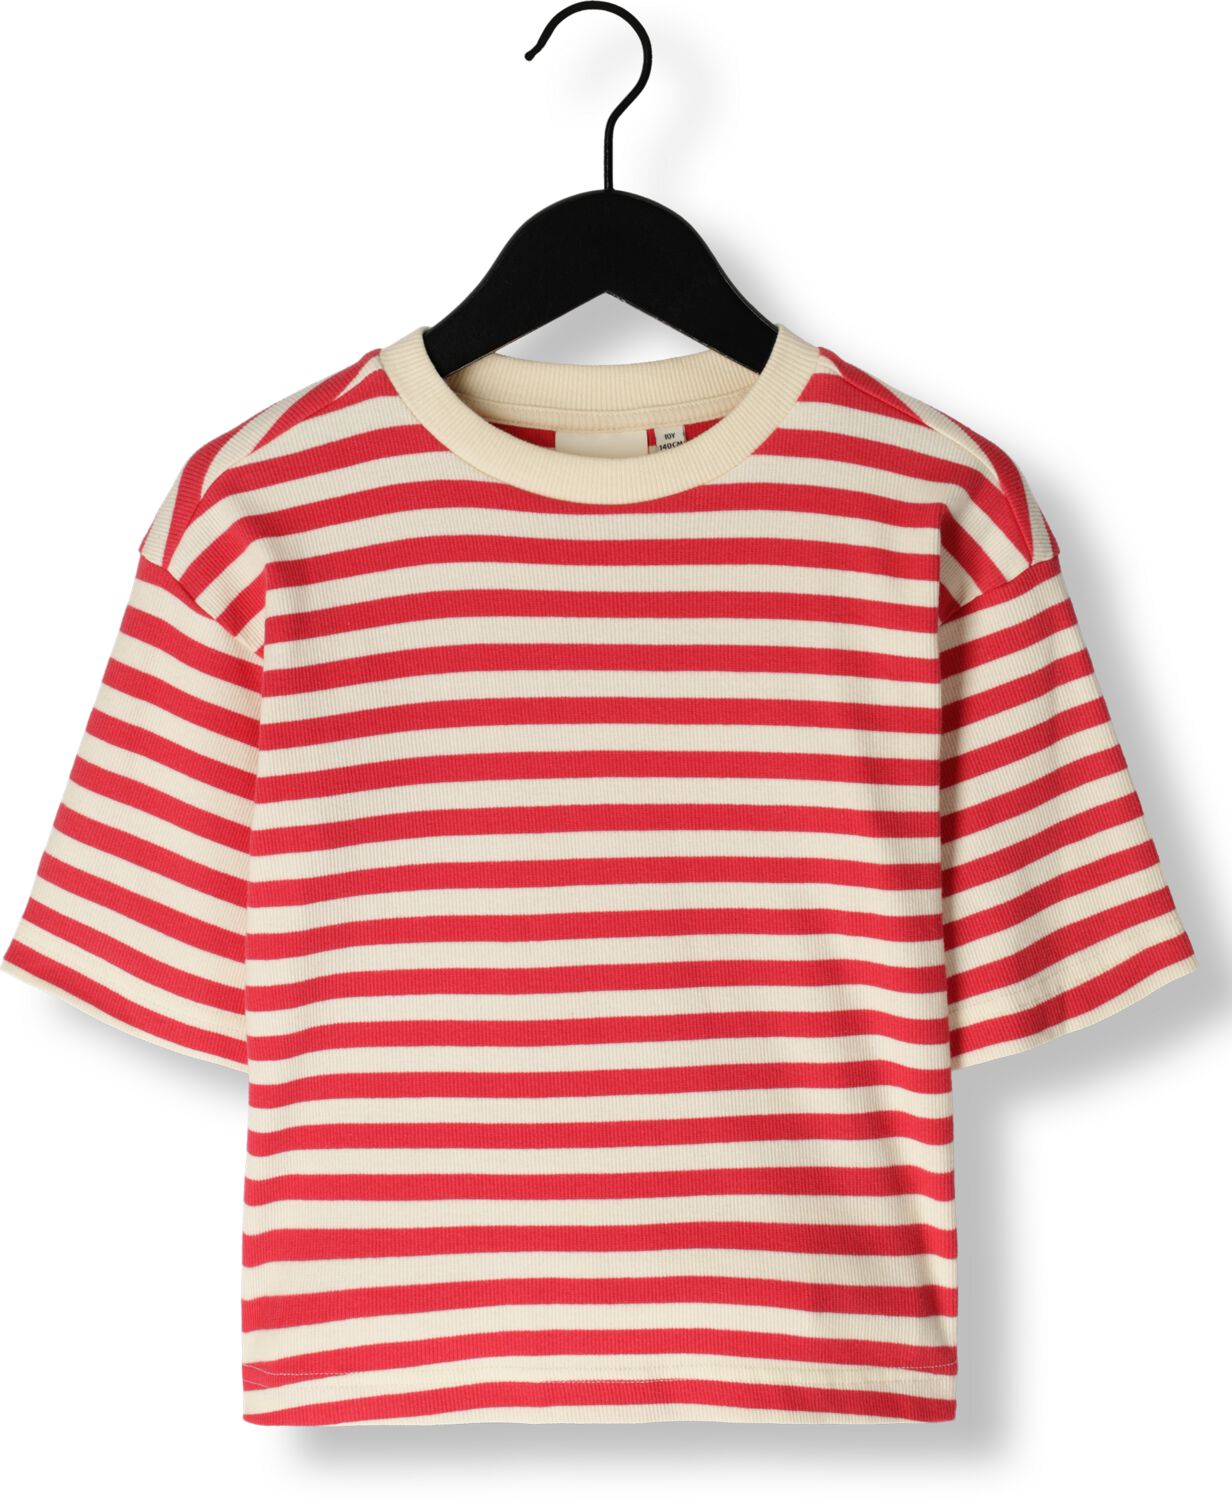 SOFIE SCHNOOR Meisjes Tops & T-shirts G241217 Rood